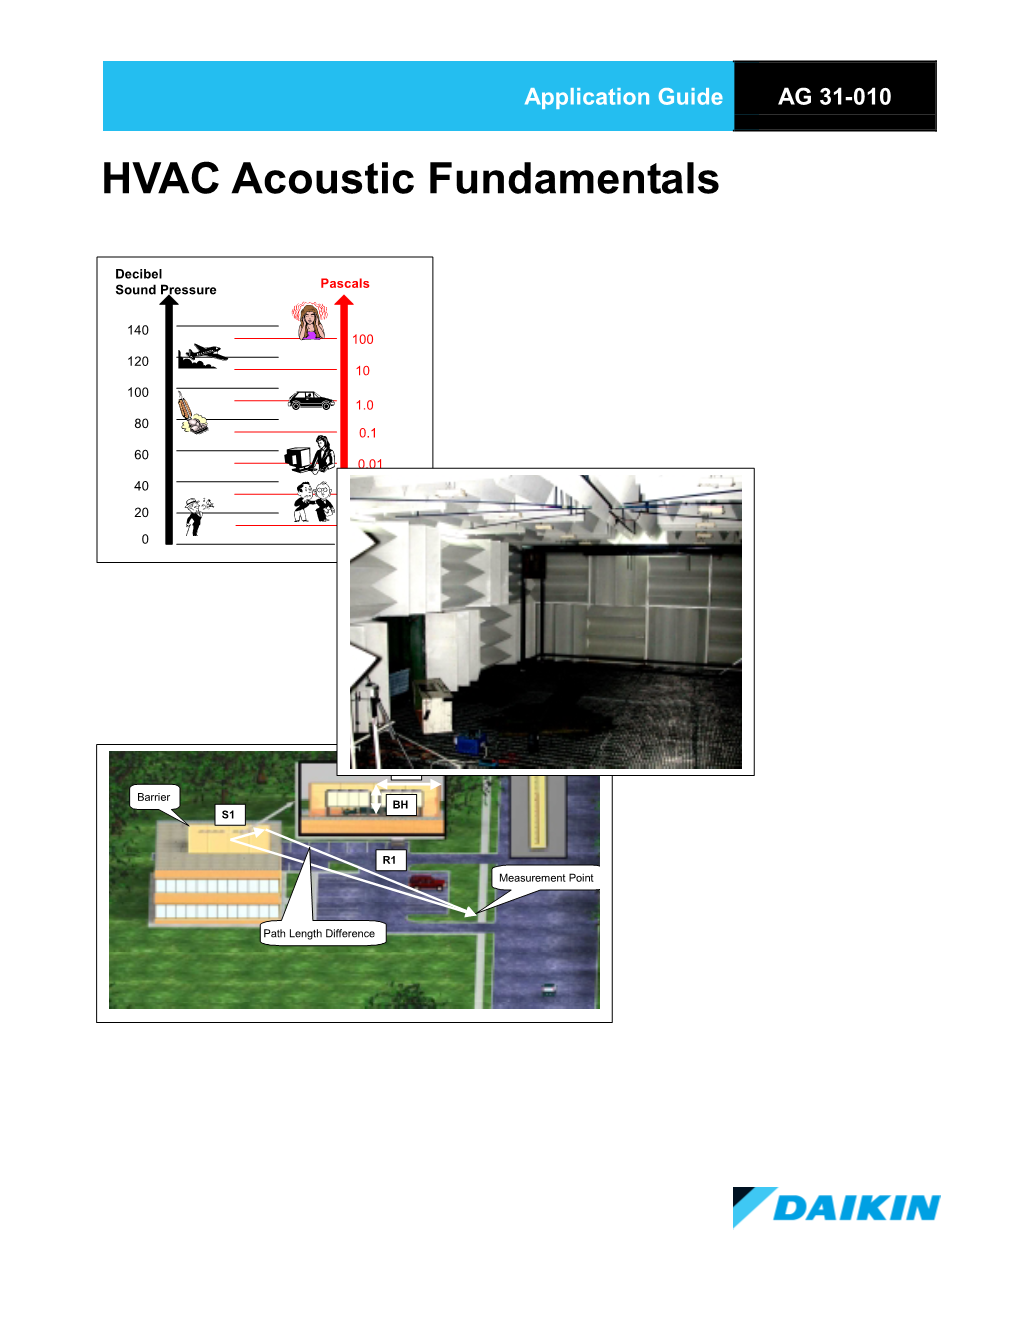 HVAC Acoustic Fundamentals